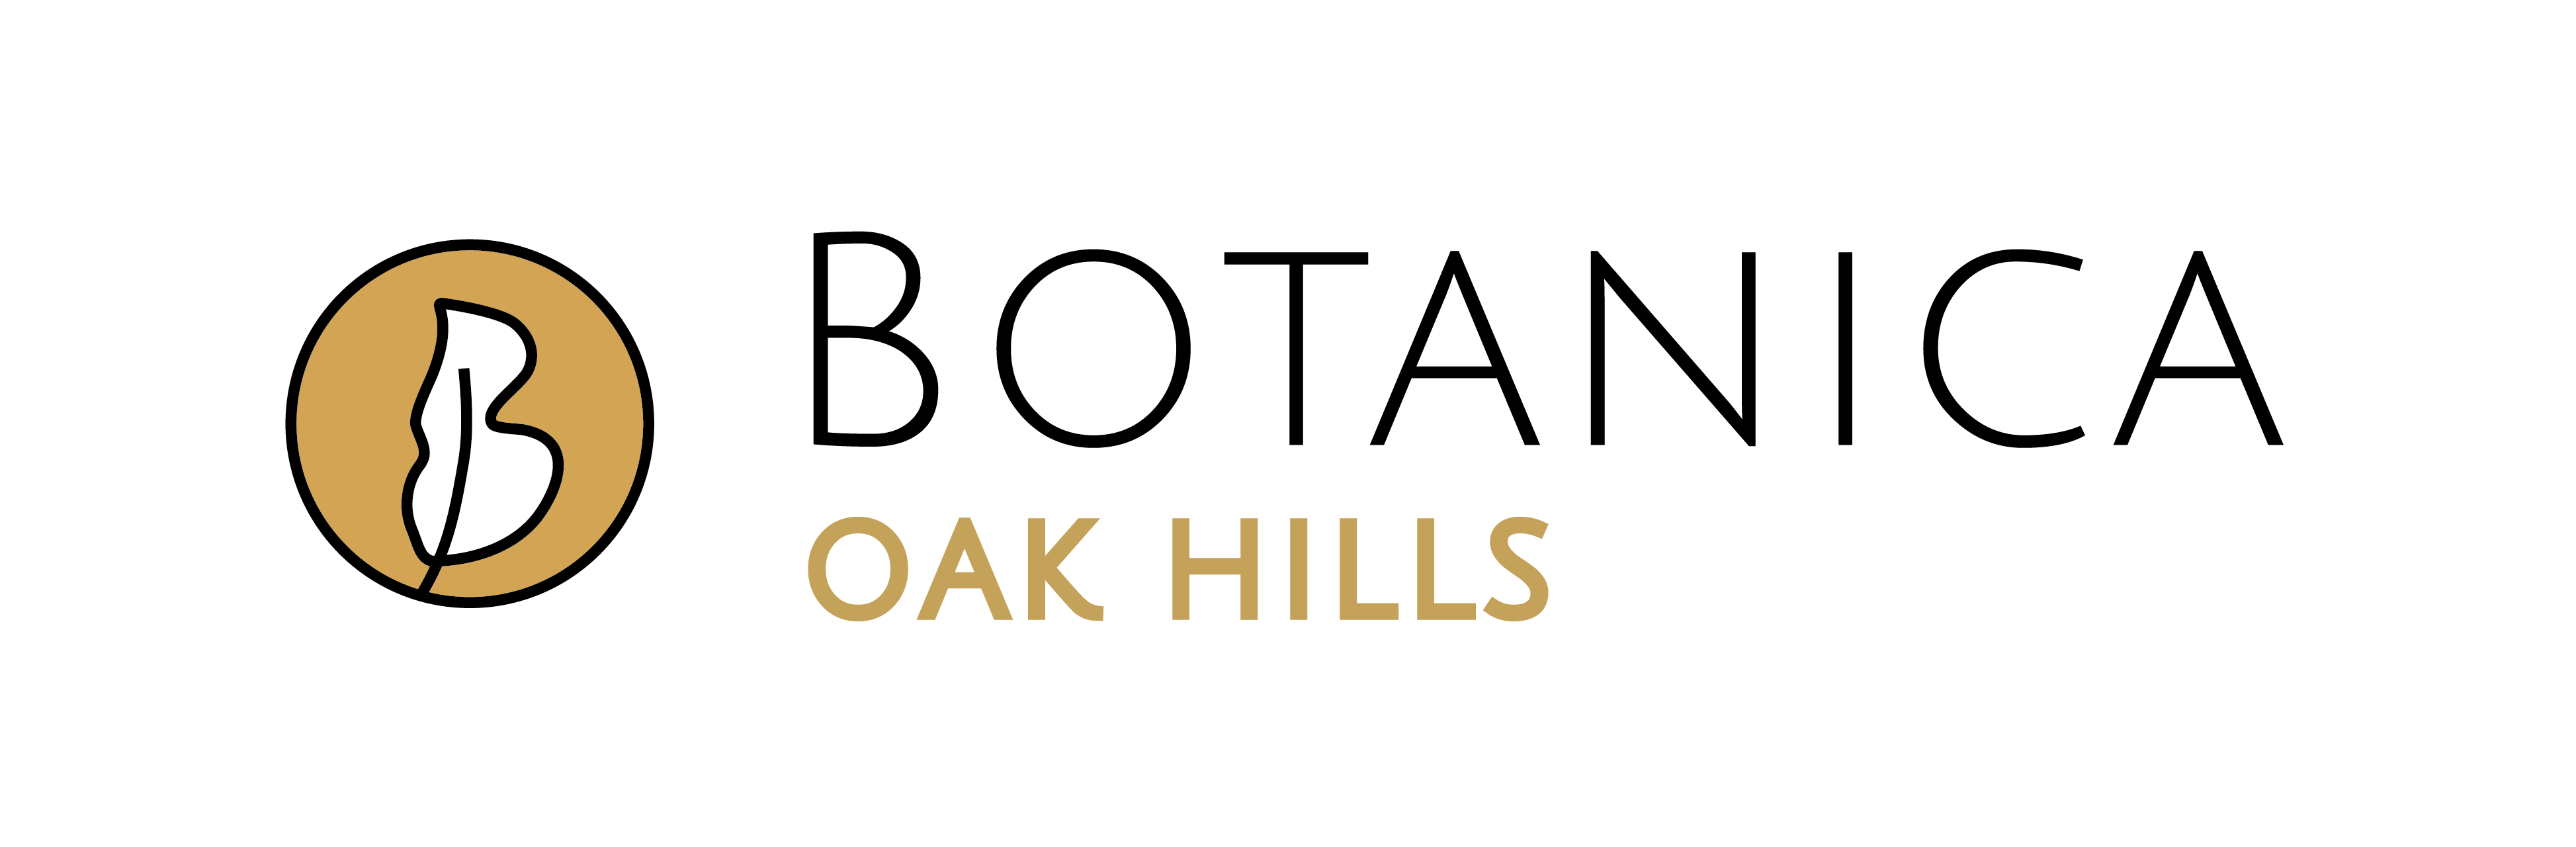 Botanica Oak Hills